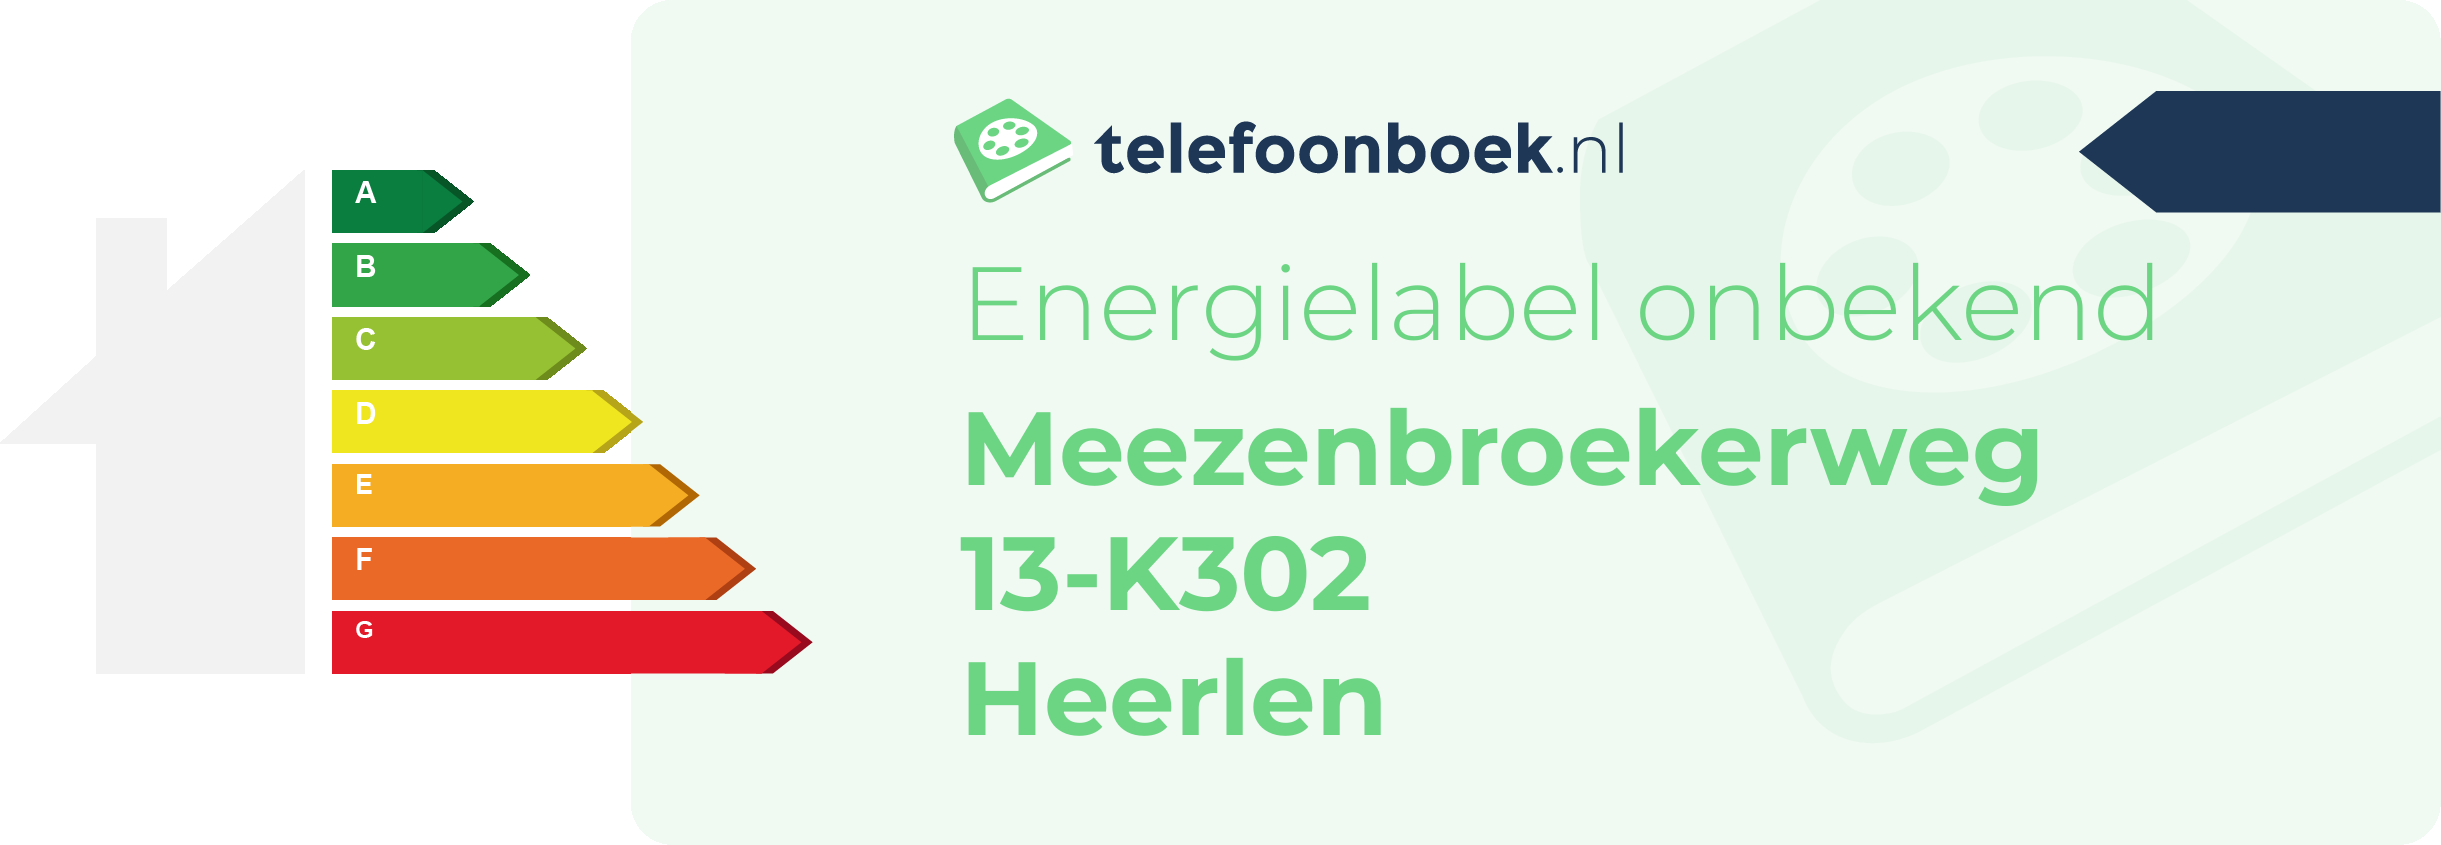 Energielabel Meezenbroekerweg 13-K302 Heerlen